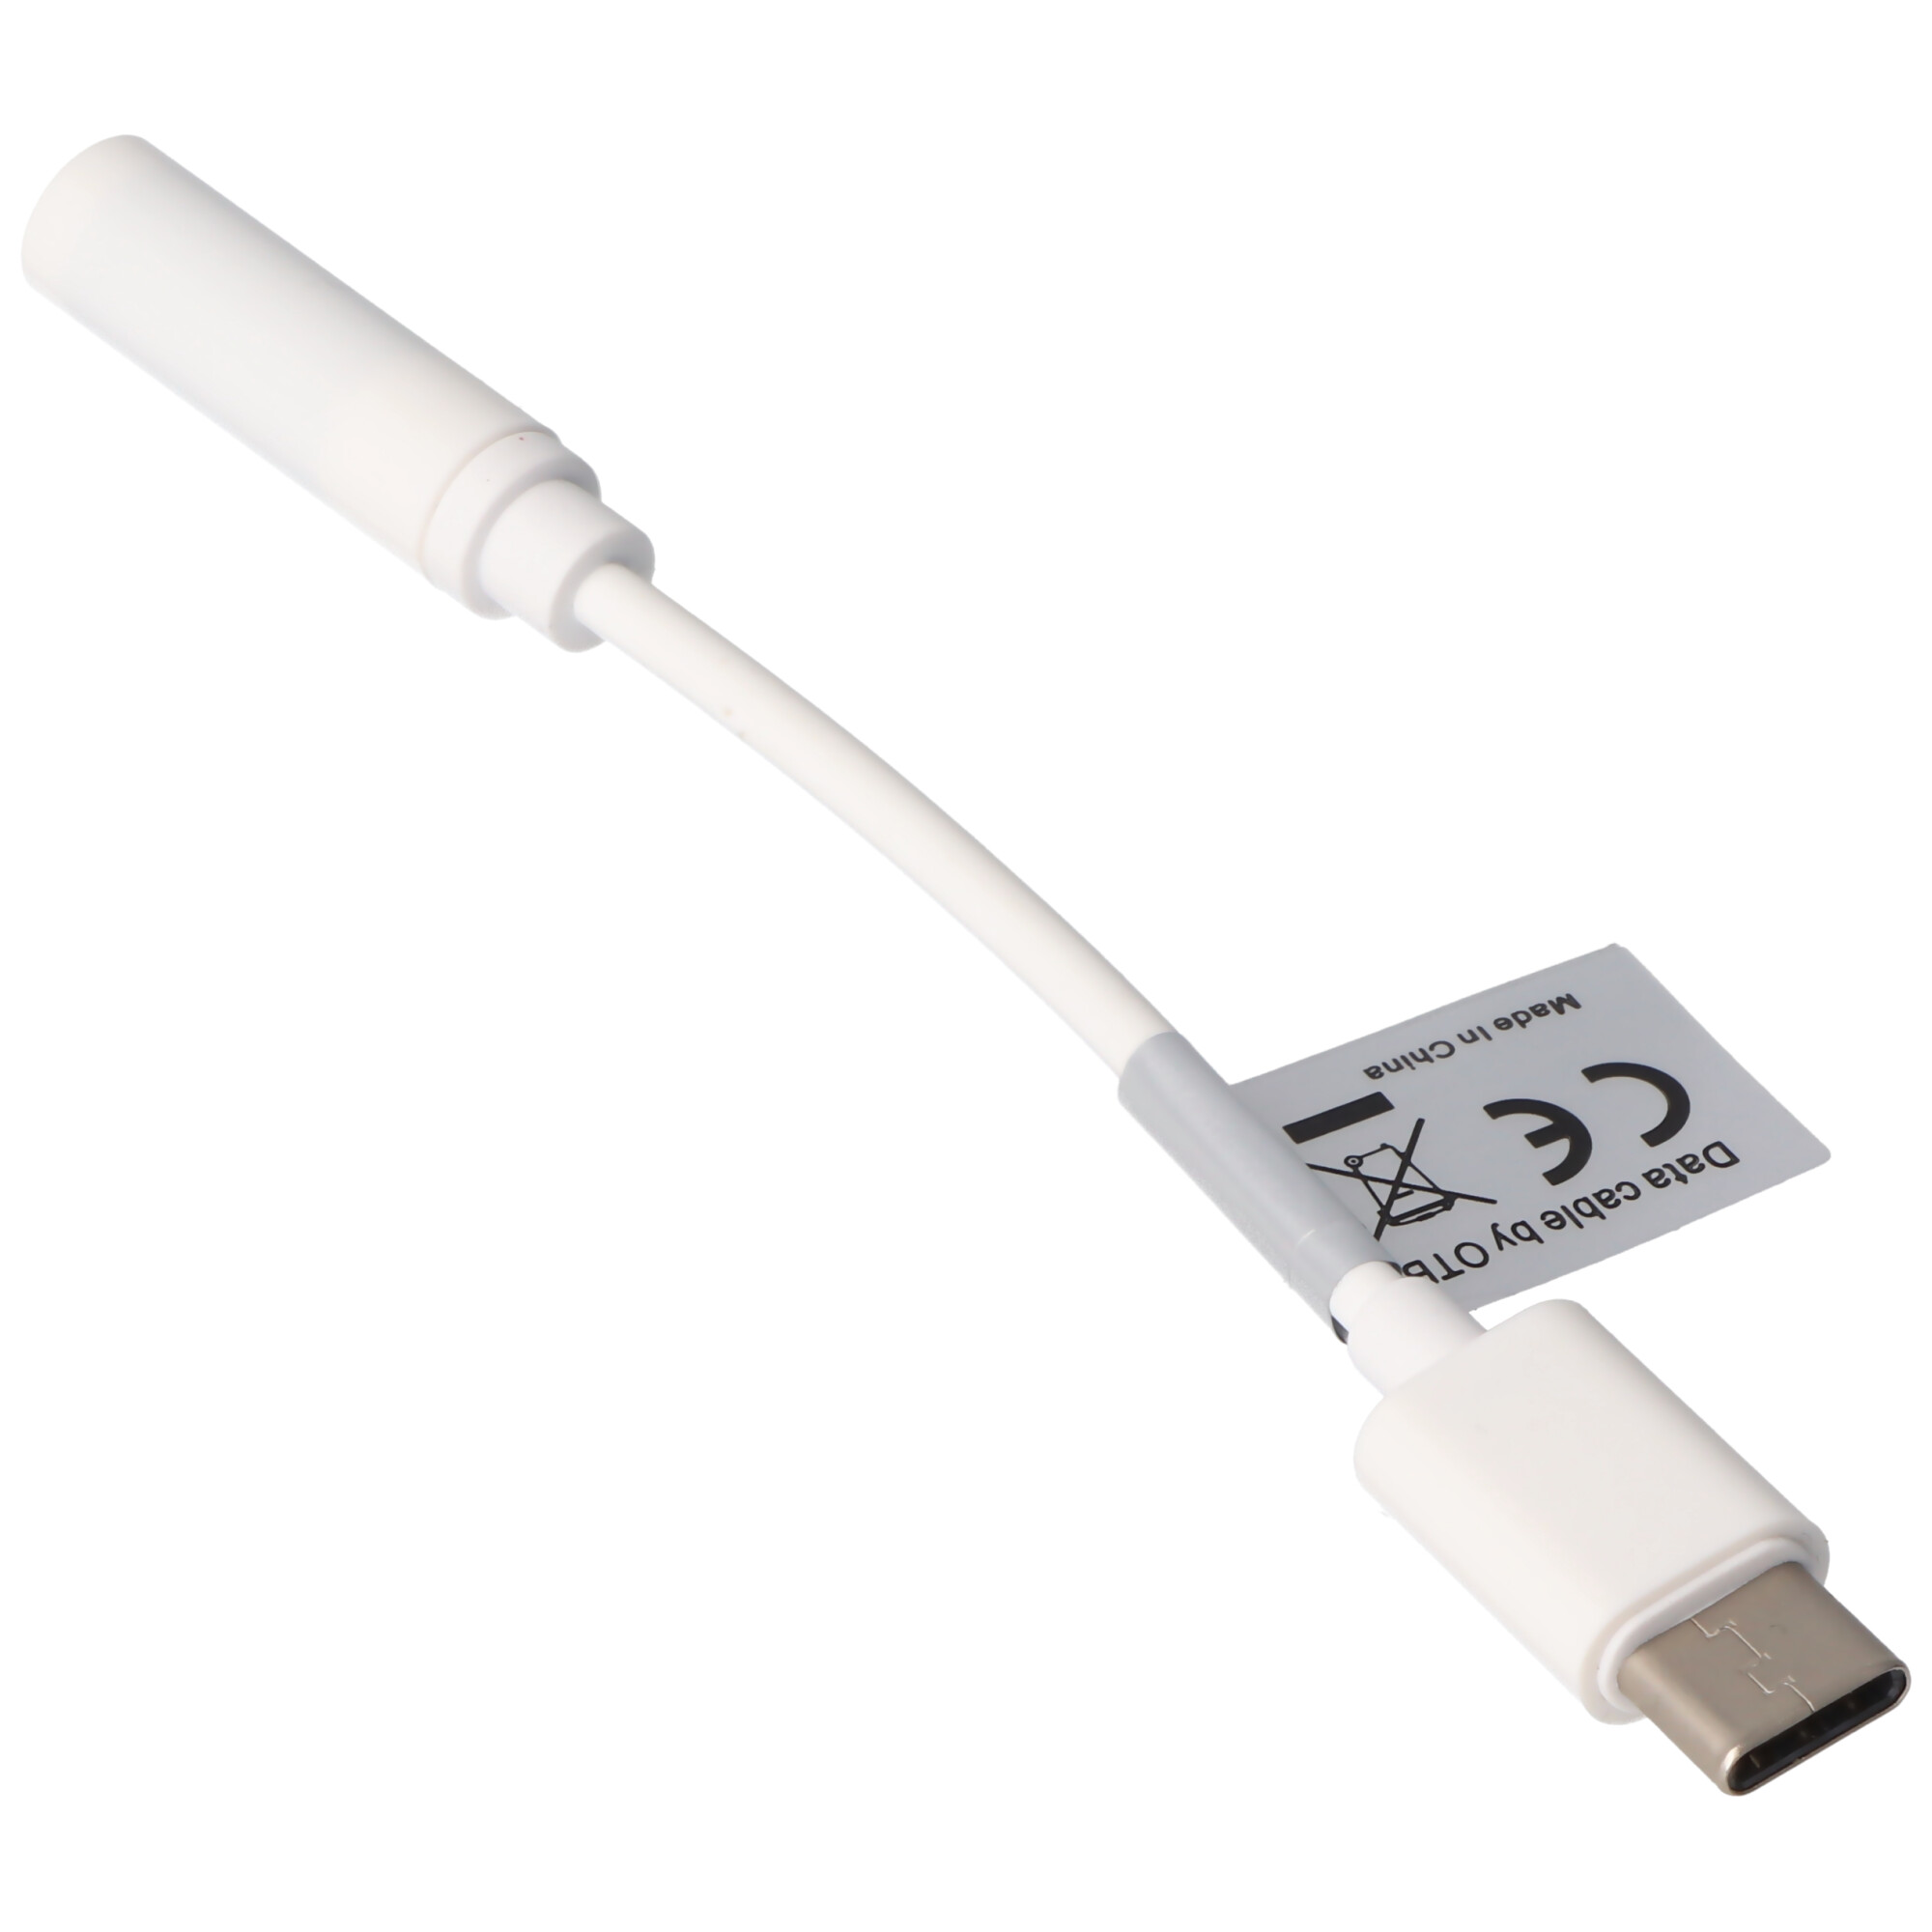 AUDIO- UND HEADSETADAPTER von USB TYPE C USB-C auf ein 3,5MM STEREO KABEL